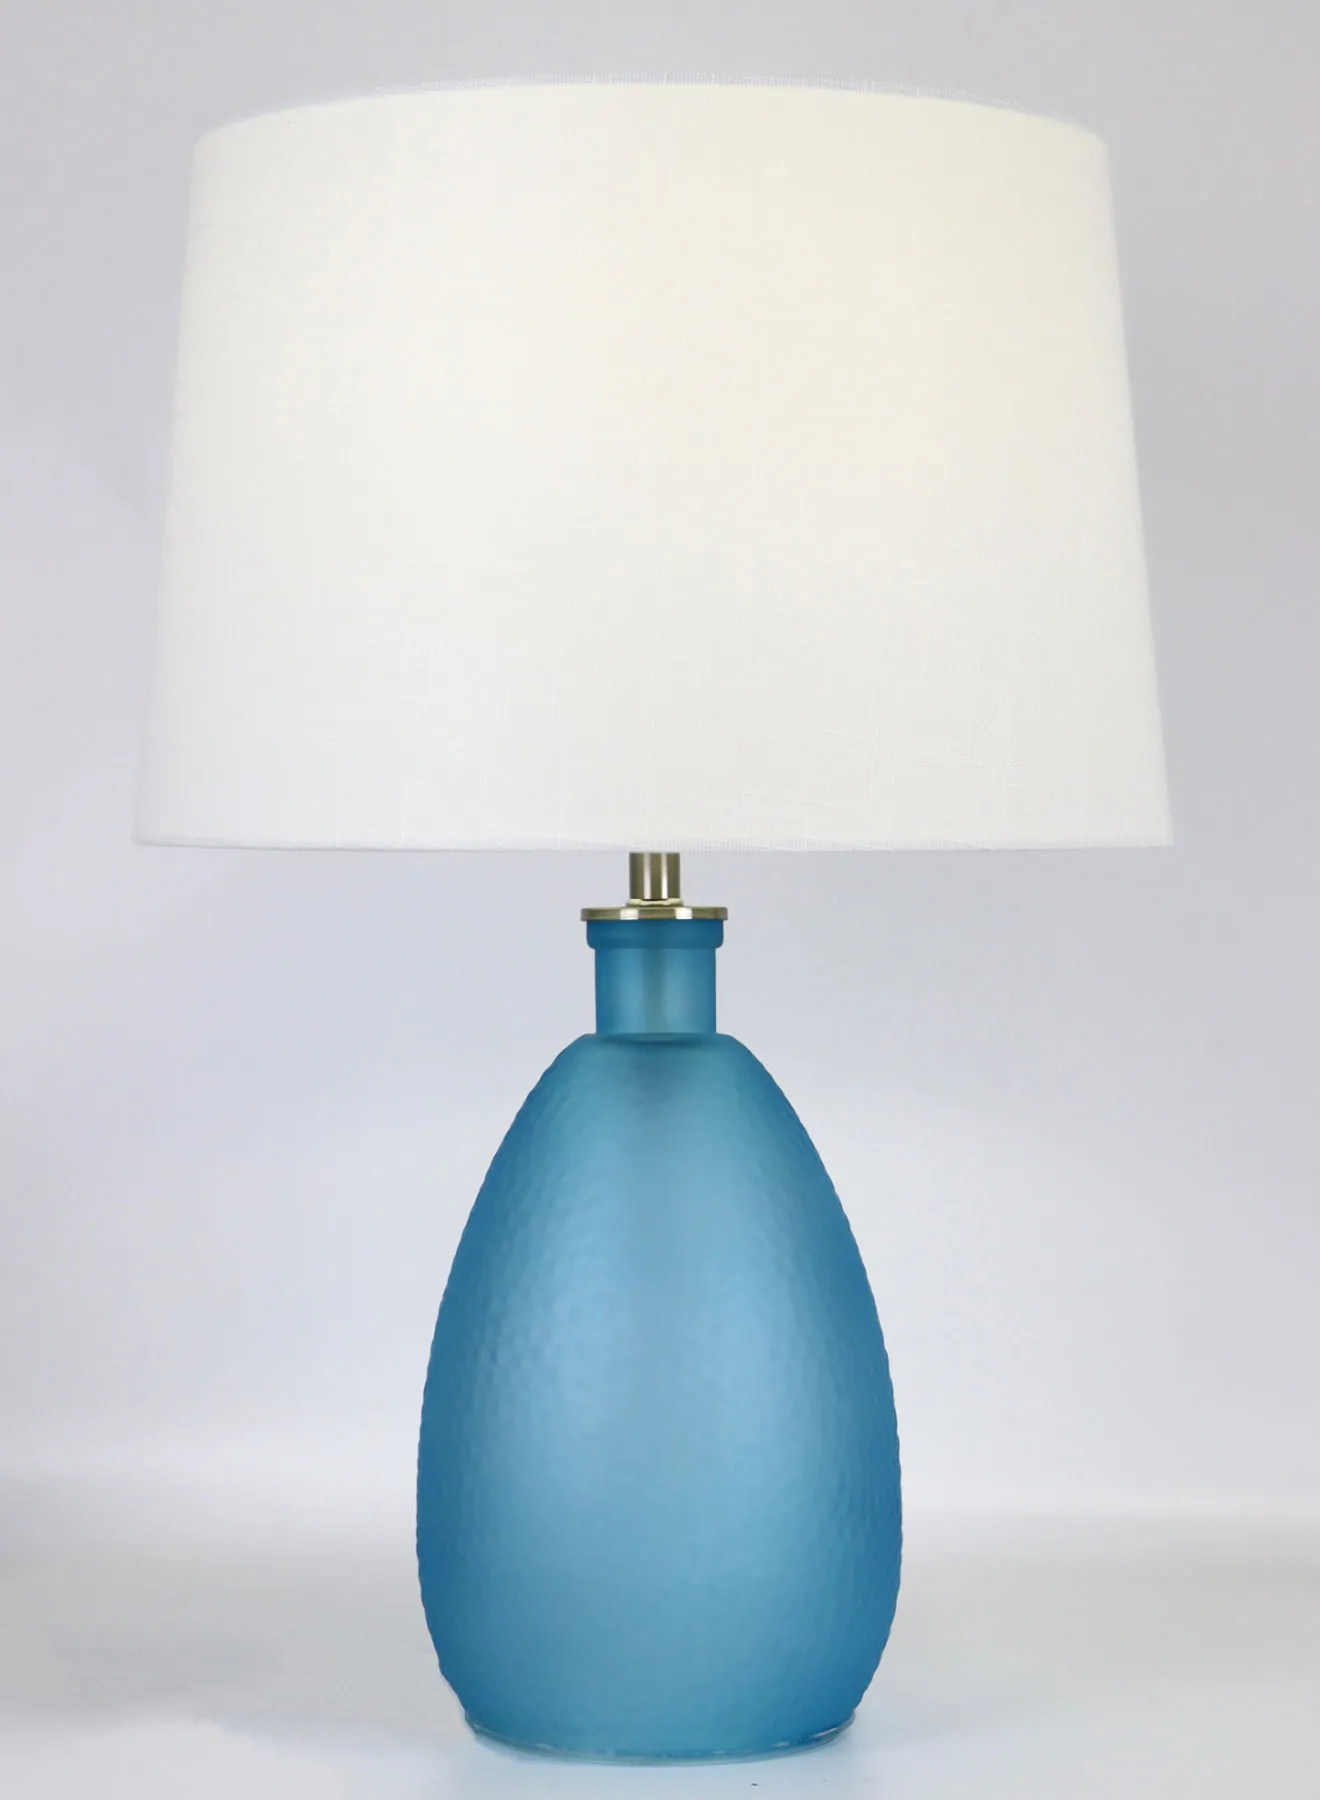 تبديل مصباح طاولة زجاجي بتصميم حديث فريد من نوعه مواد ذات جودة فاخرة لمنزل أنيق مثالي RSN71024 أزرق 15 × 22 بوصة